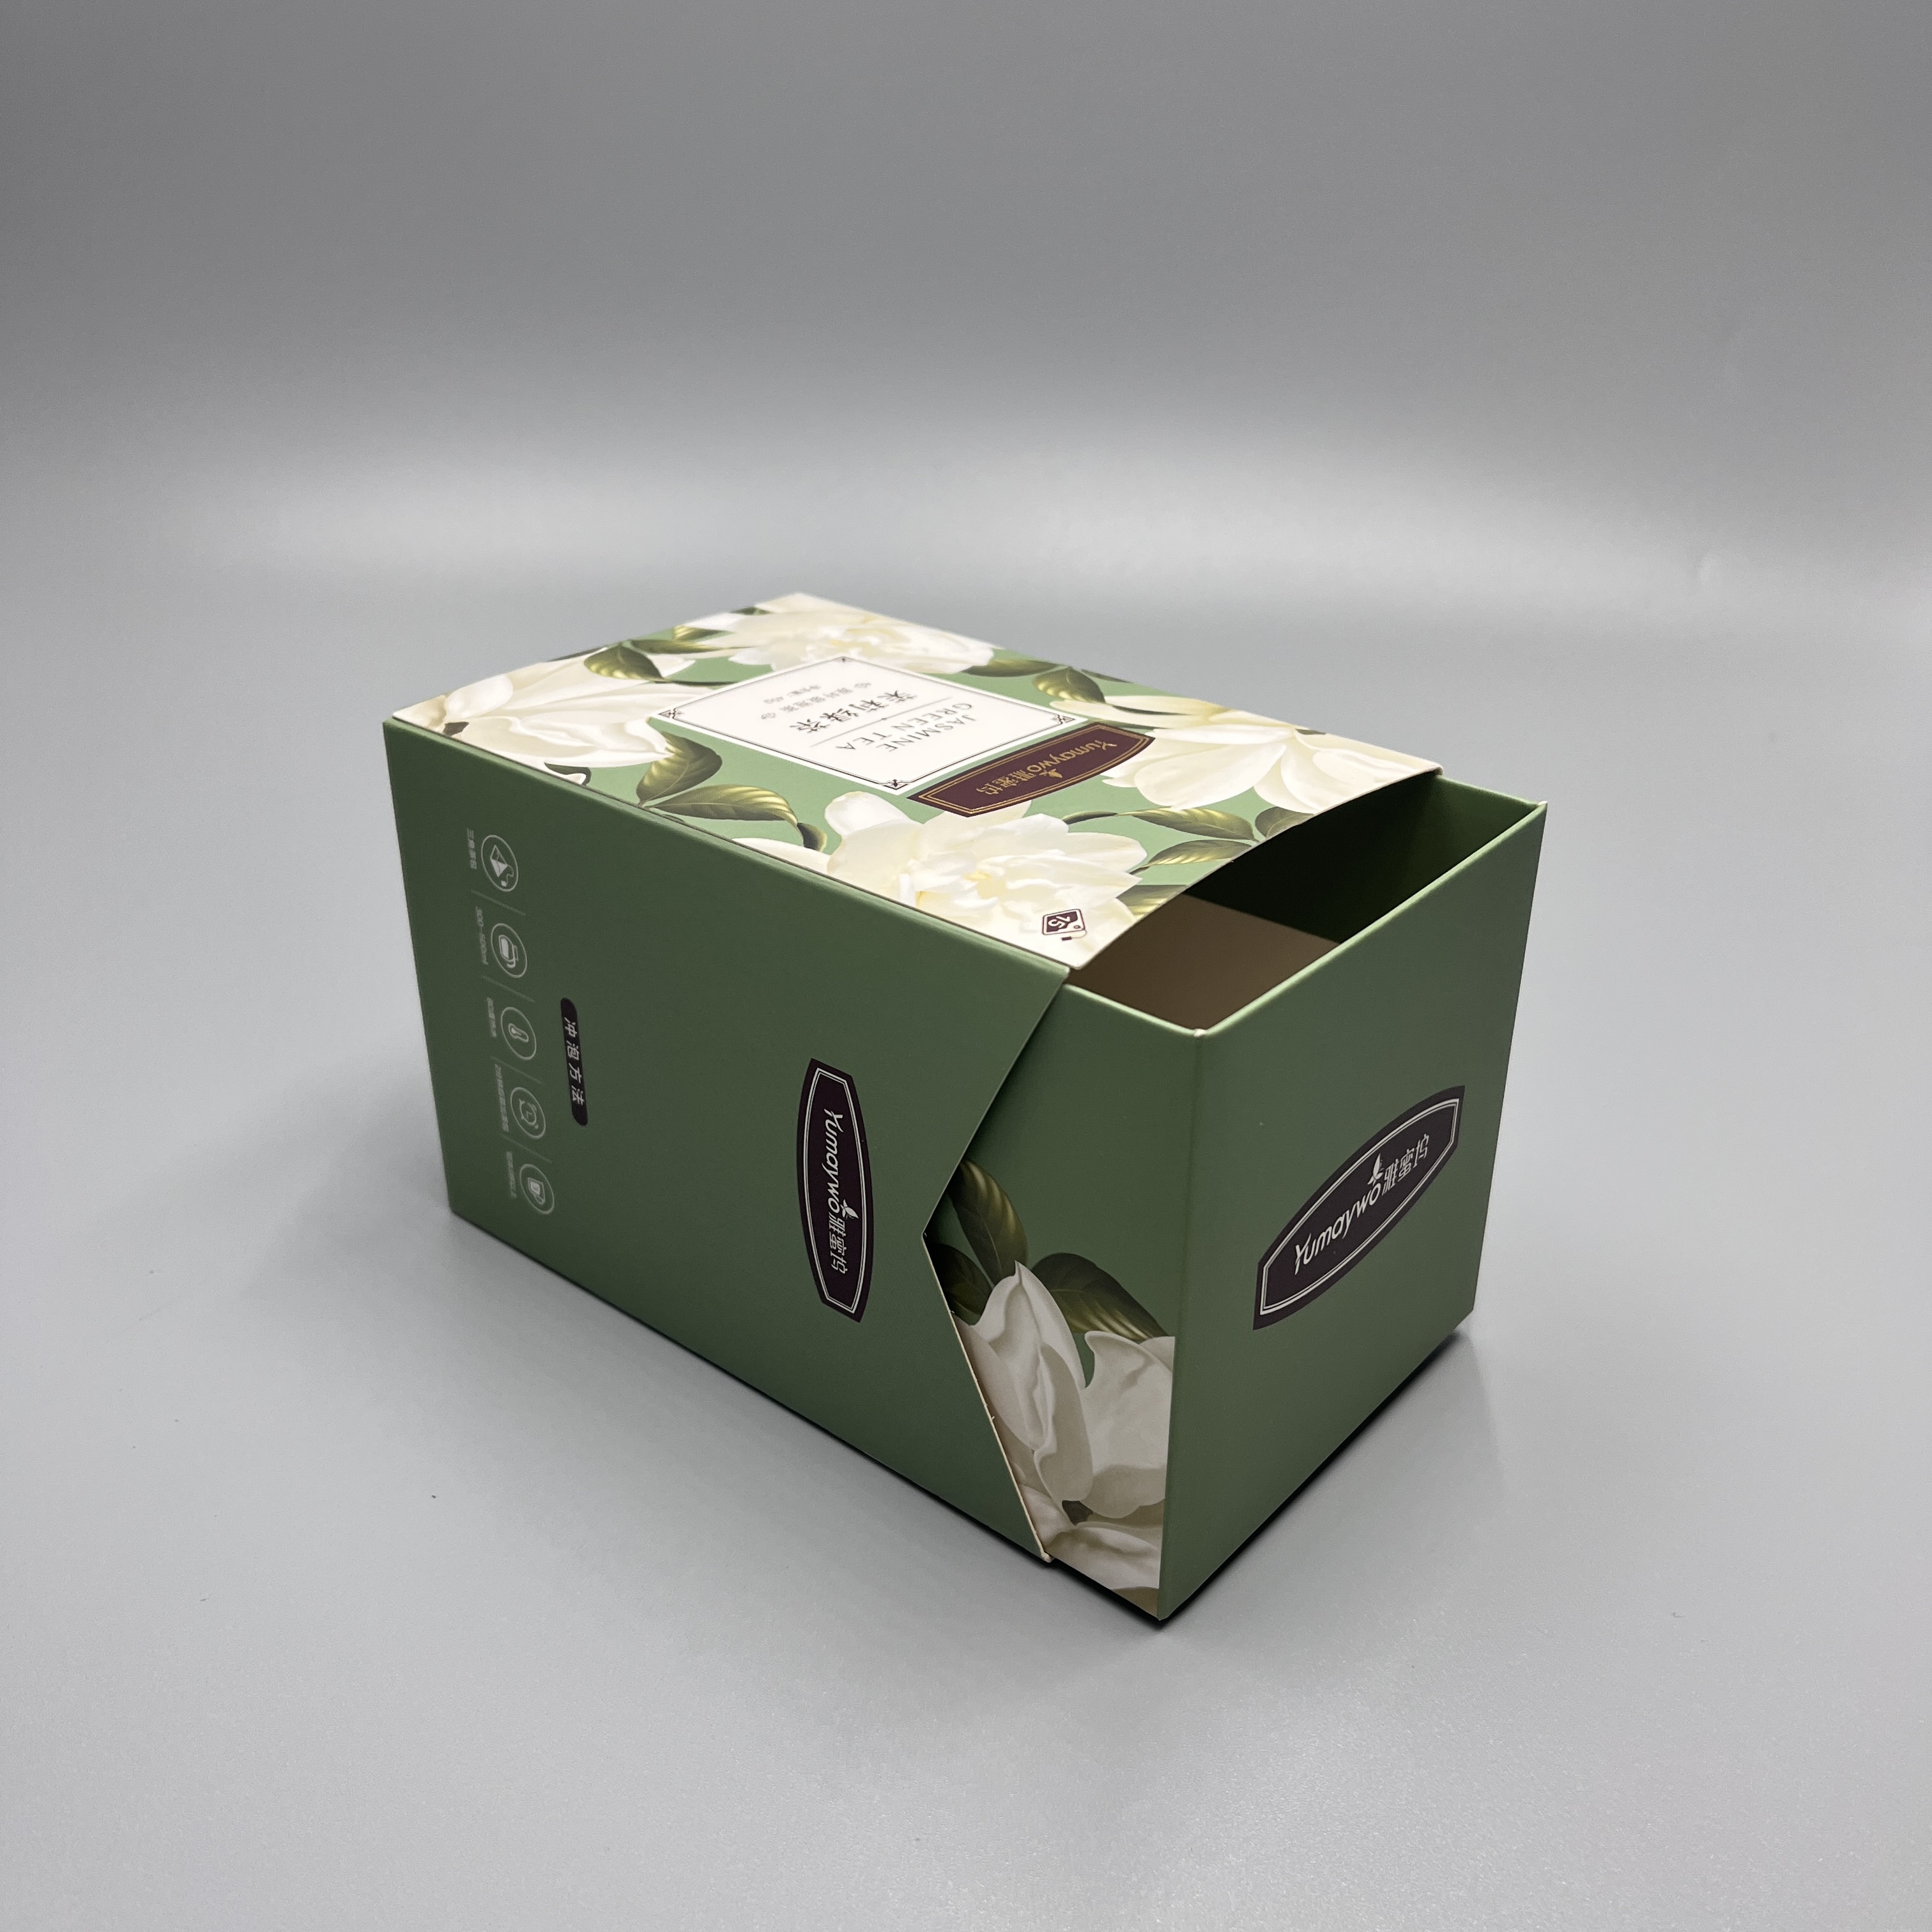 Caixa de paper d'emmagatzematge de calaix personalitzat plegable de paper recobert d'art amb logotip